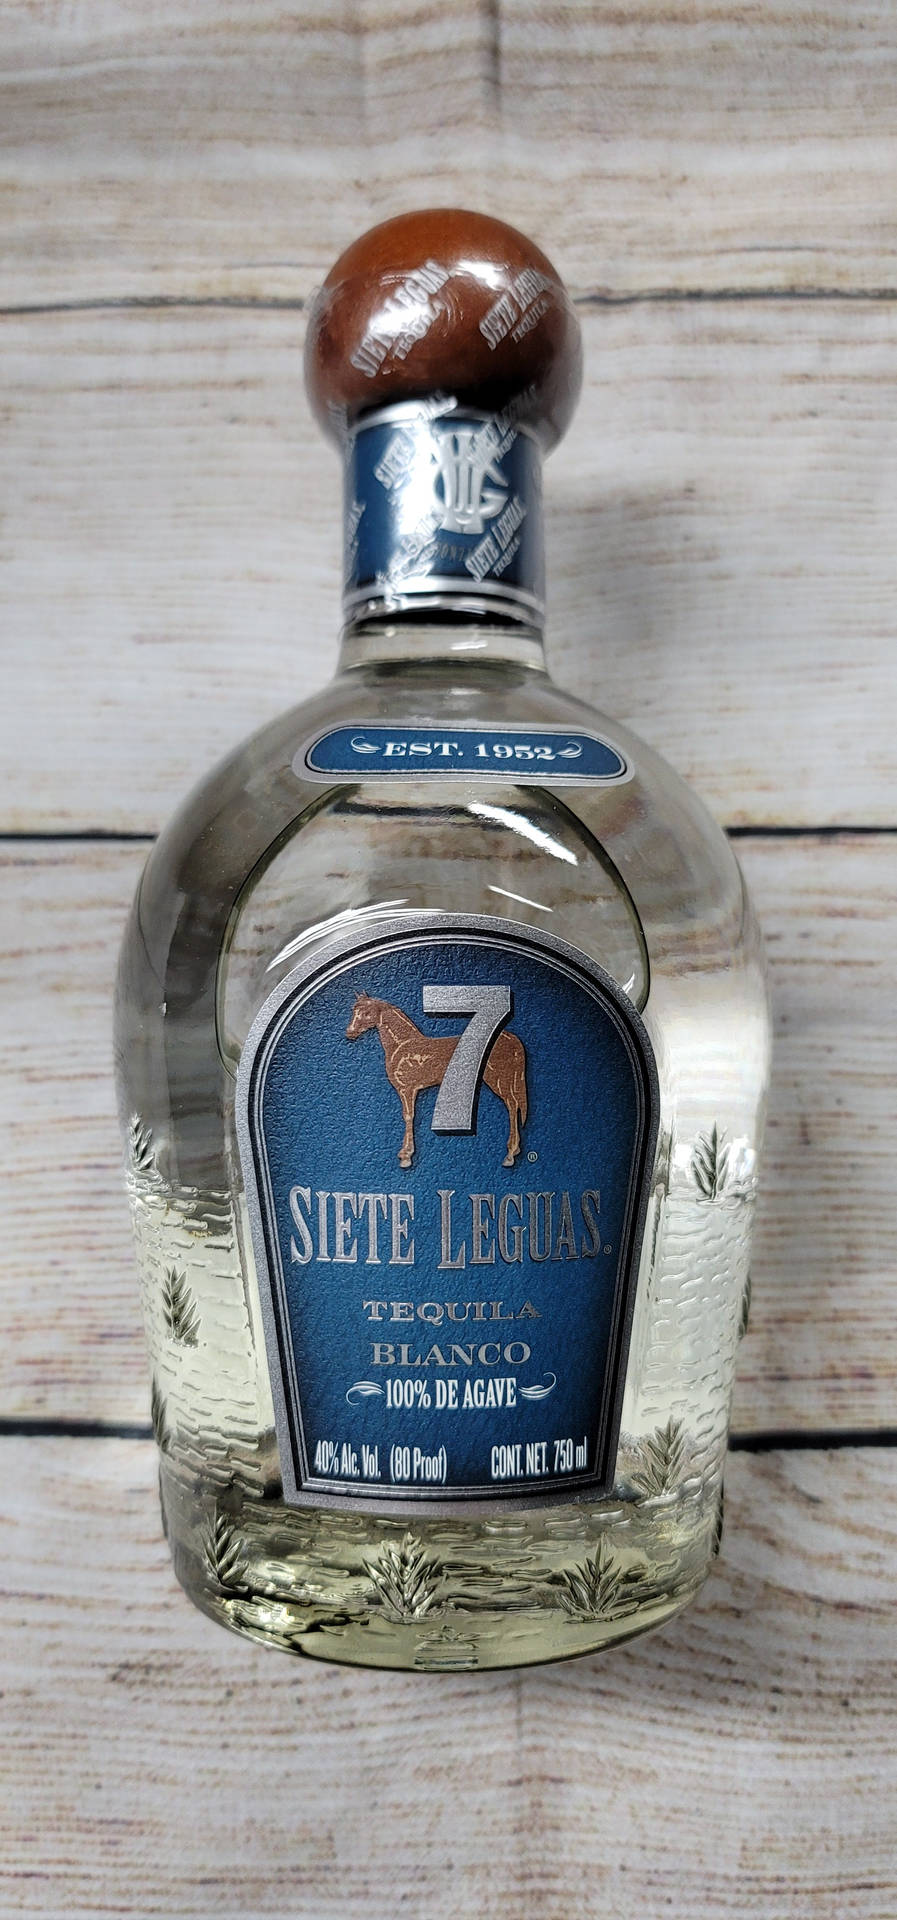 Caption: Siete Leguas Blanco Tequila Bottle Edition Wallpaper